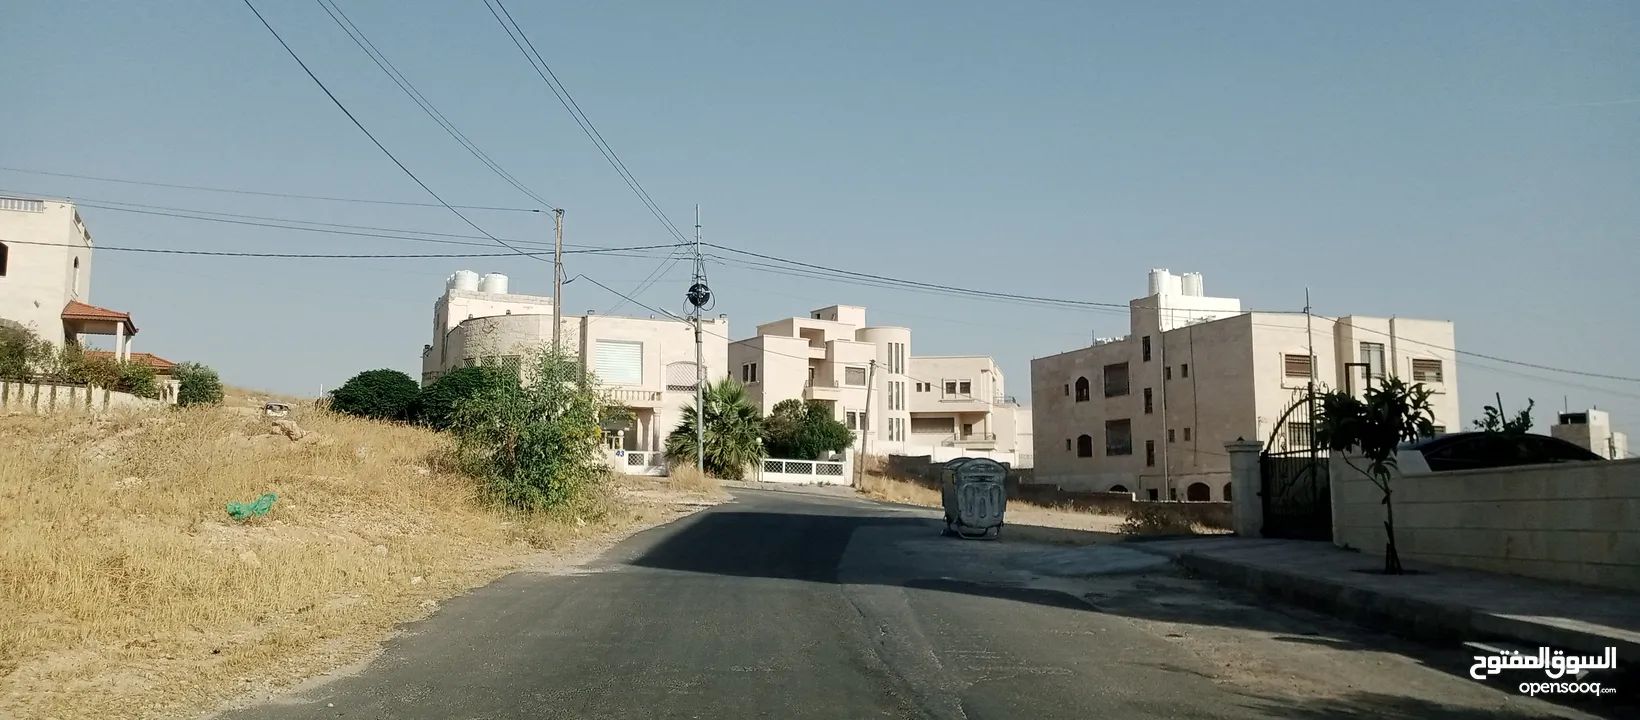 أرض للبيع في شفا بدران مرج الفرس شارعين كامل الخدمات